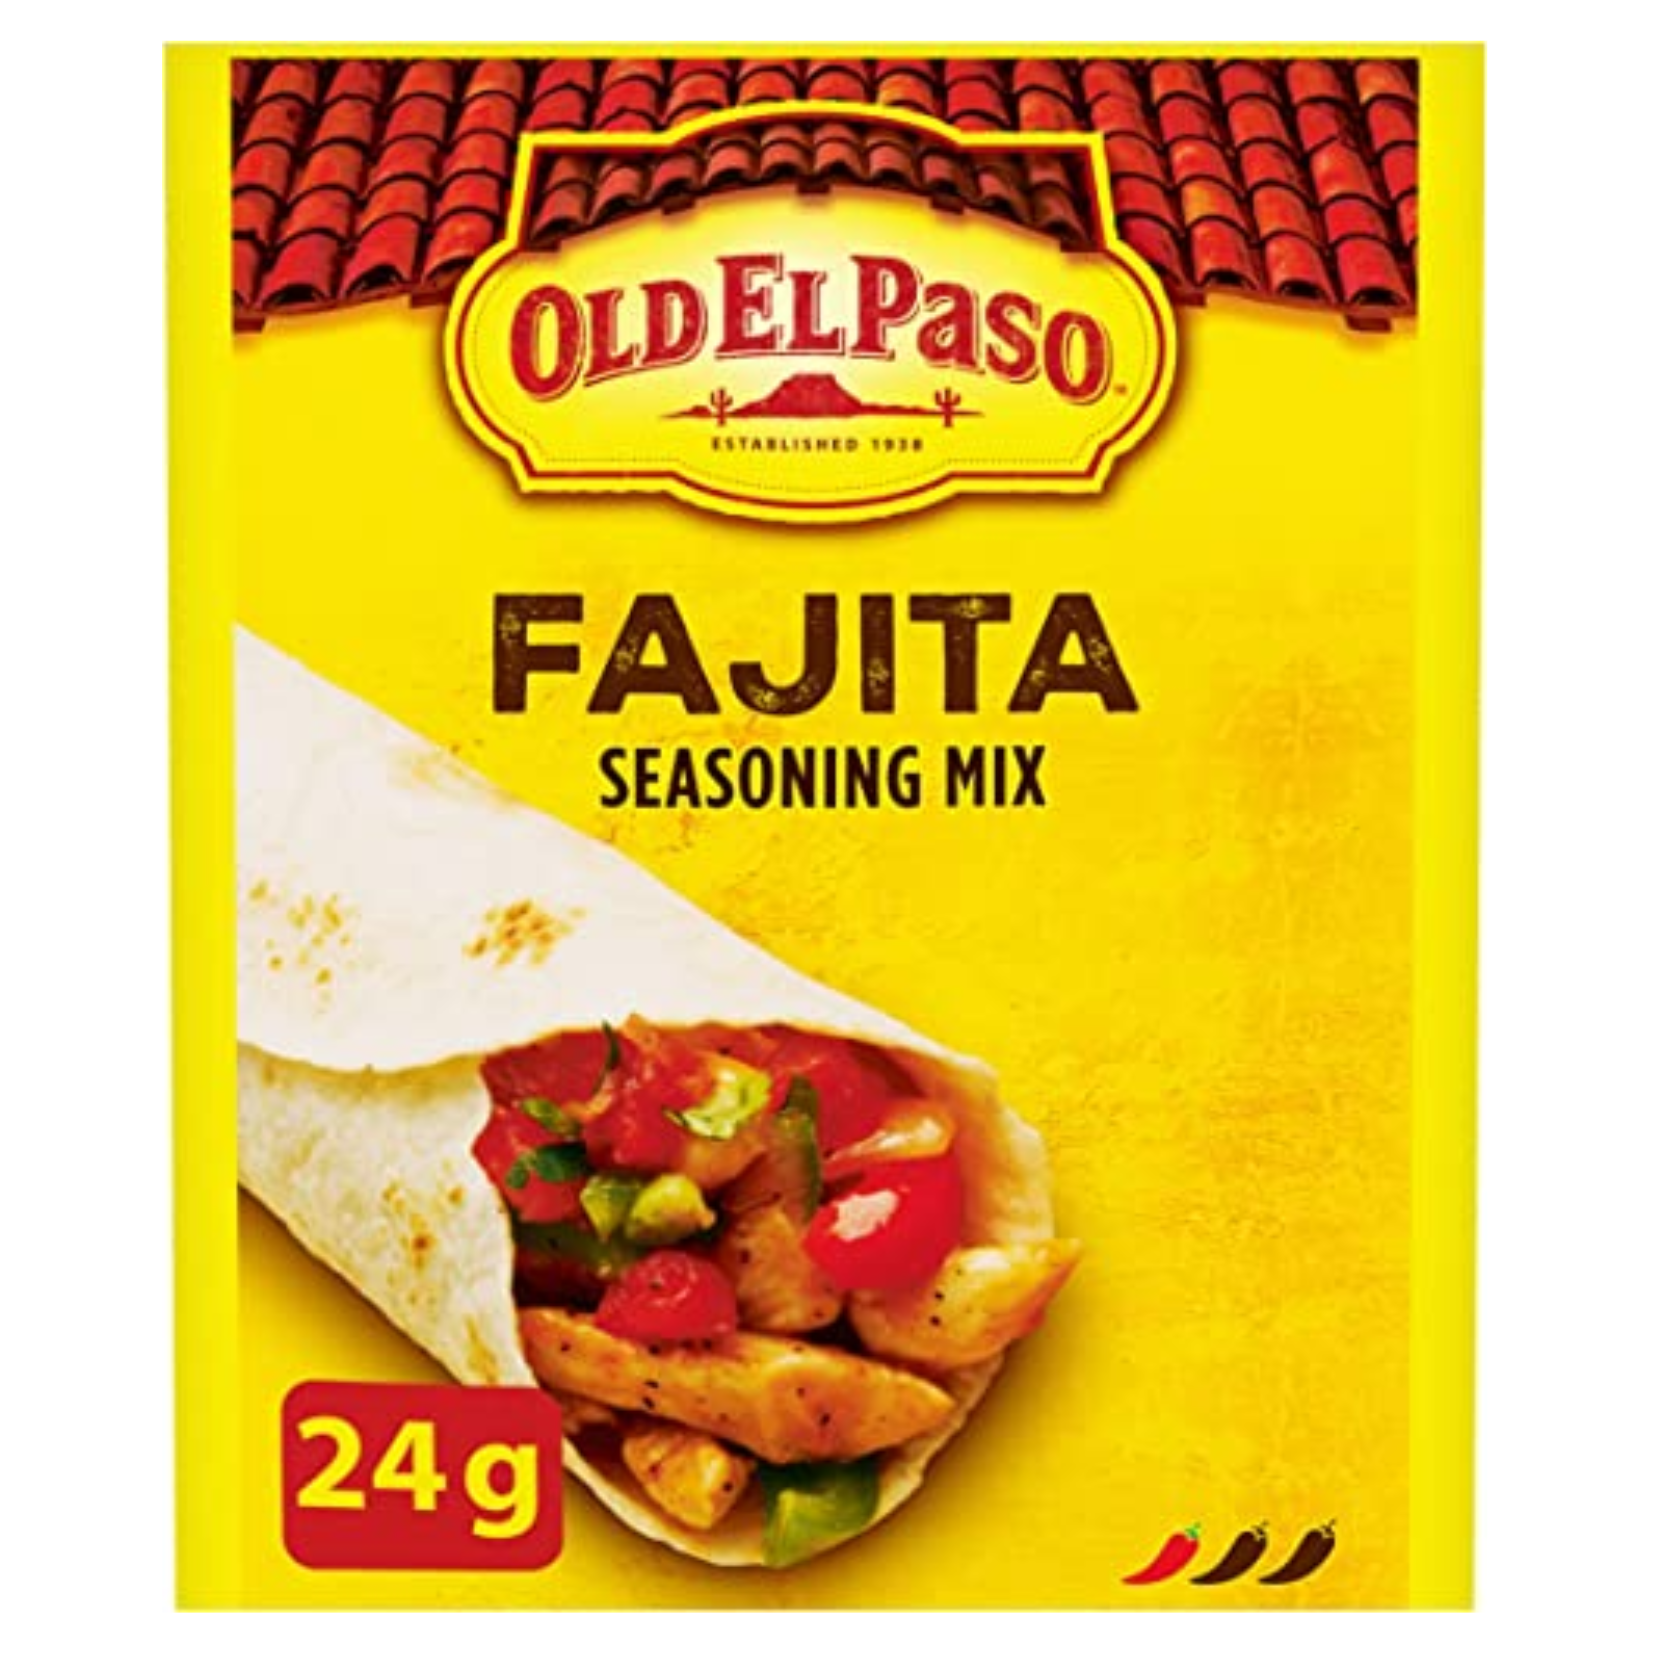 Old El Paso Fajita Seasoning Mix 24g